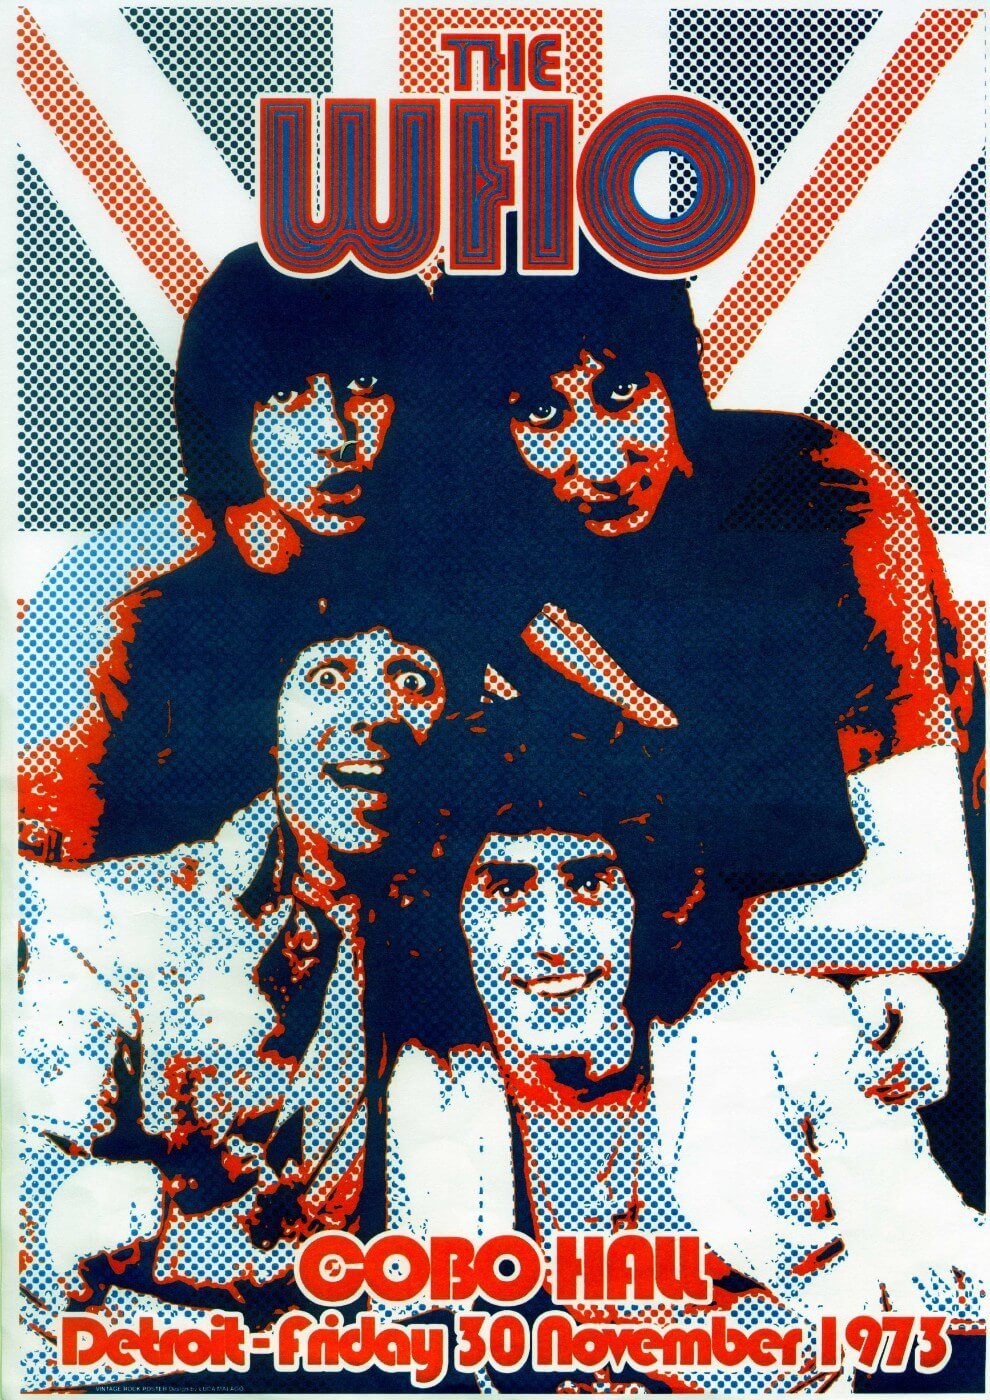 Albums the who. The who 1973. The who плакат группы. Рок группа Битлз. Постеры музыкальных групп.